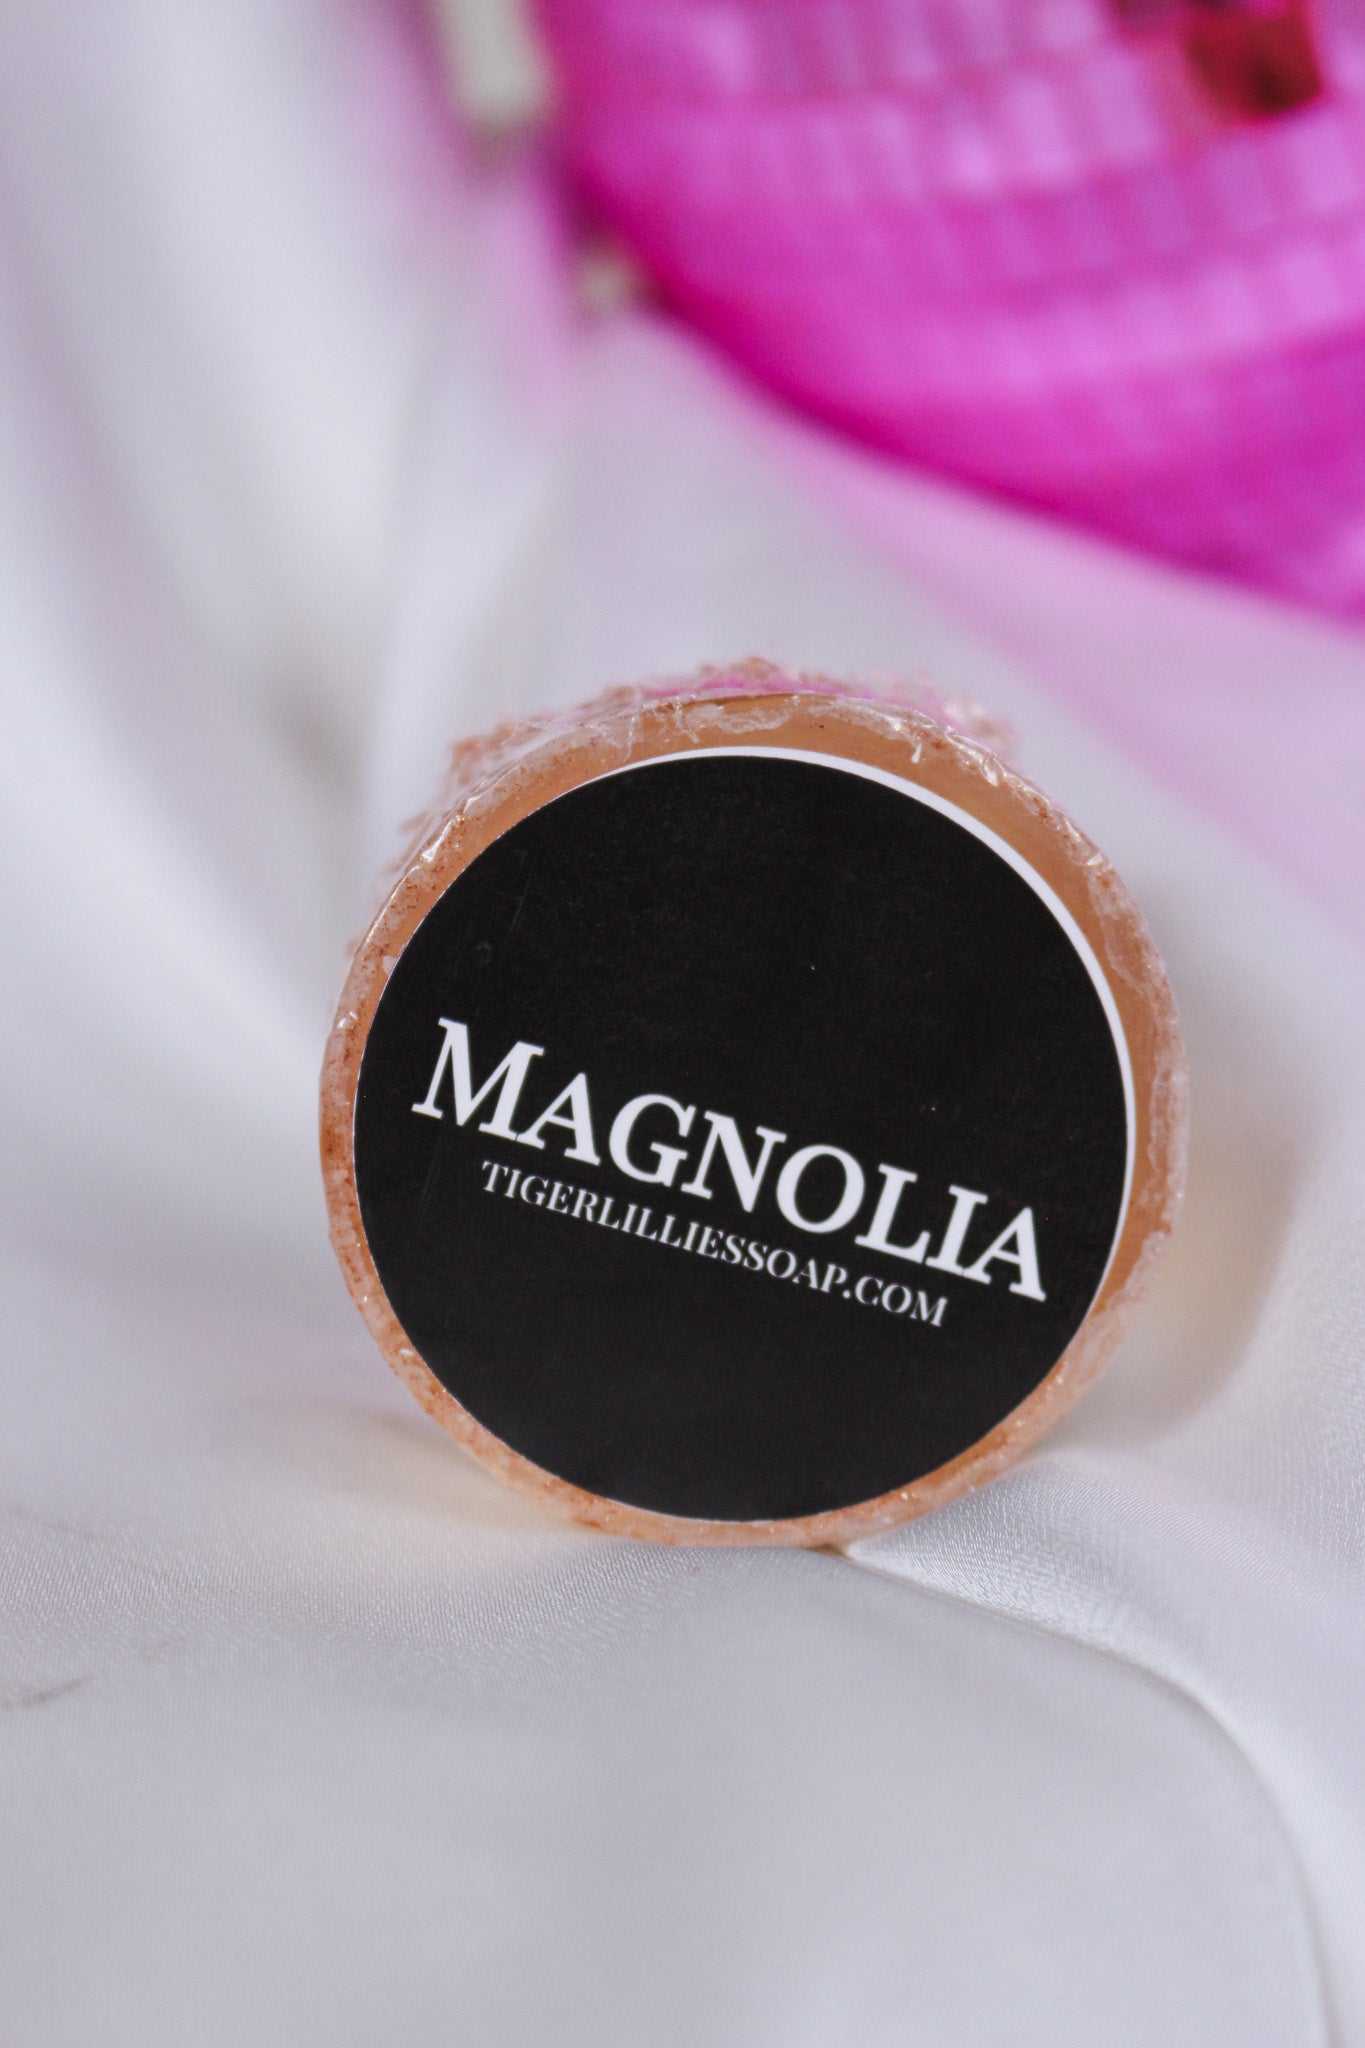 Magnolia Shave Soap